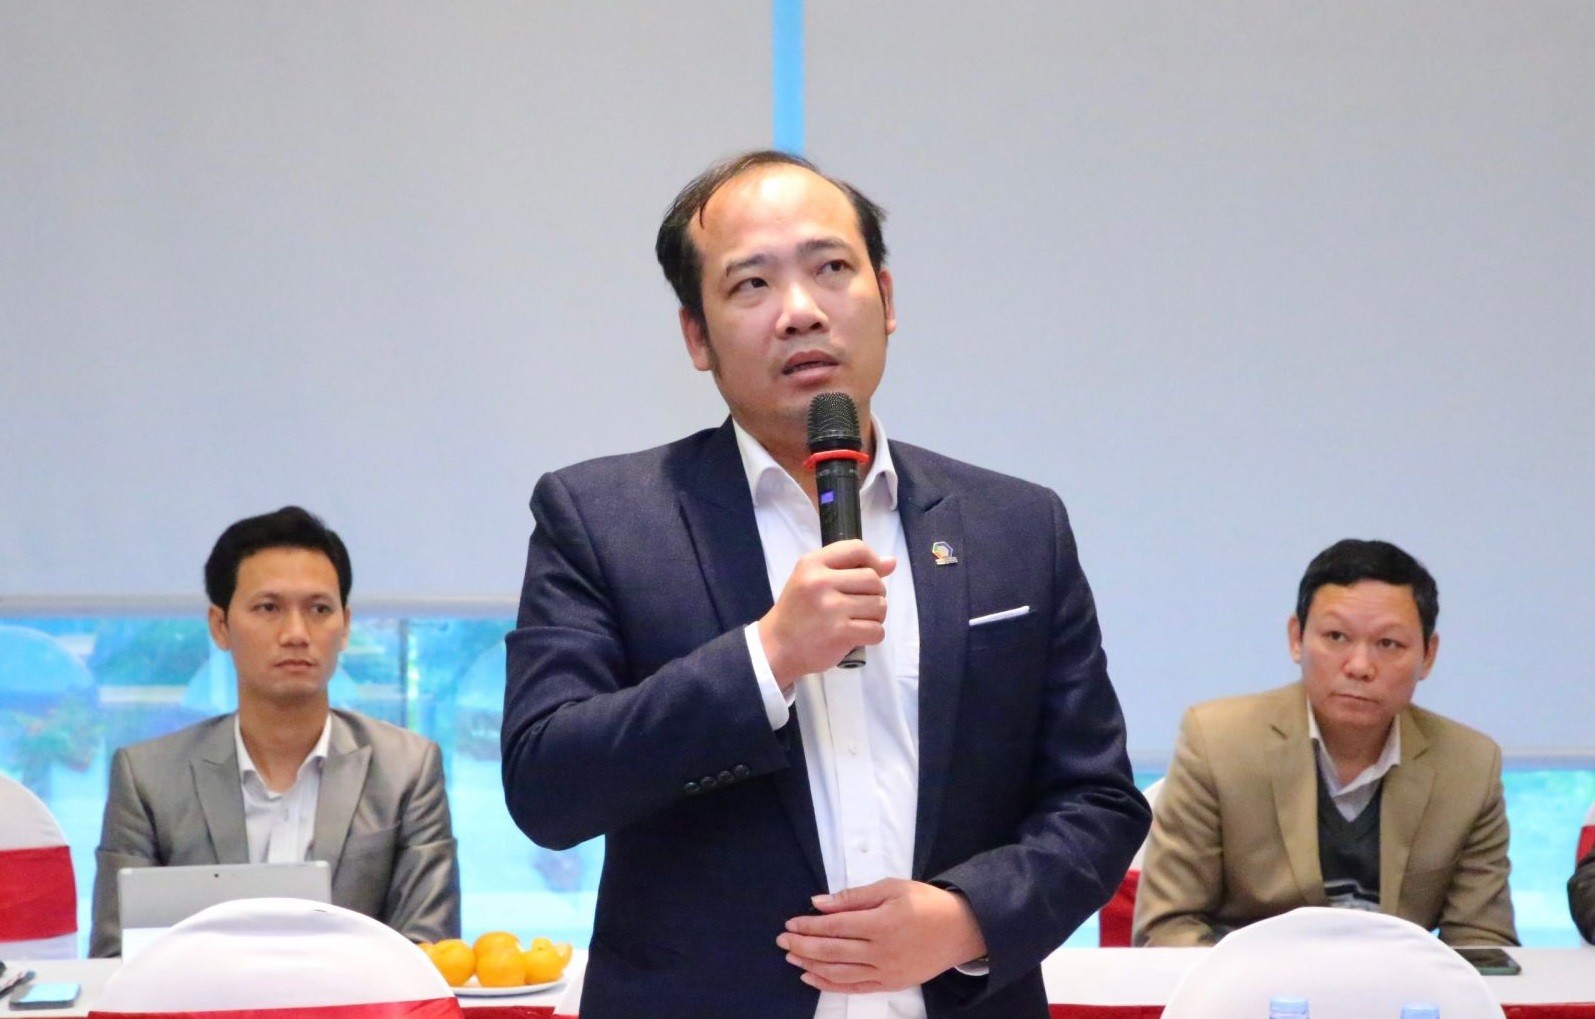 
Ông Nguyễn Anh Quê, Chủ tịch Tập đoàn G6 - Ủy viên Ban chấp hành Hiệp hội Bất động sản Việt Nam
